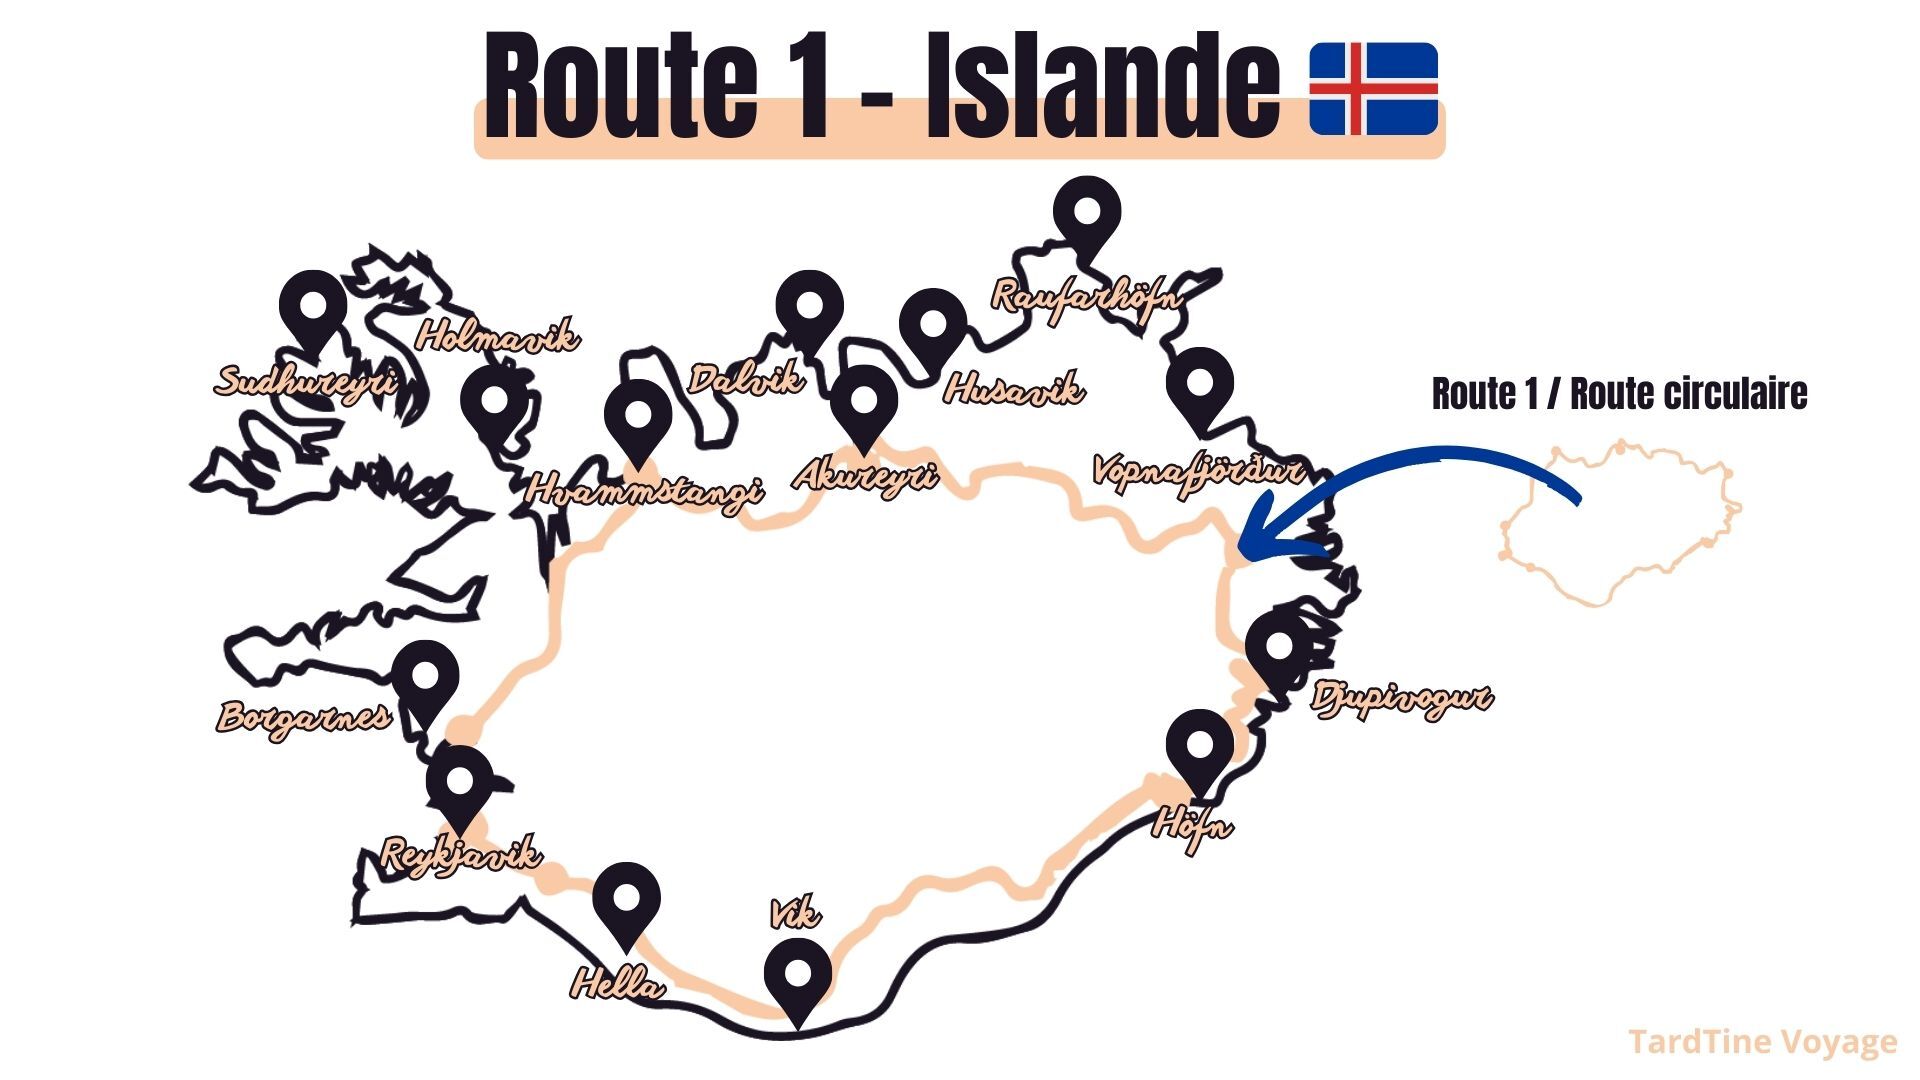 Route 1 road trip en islande carte